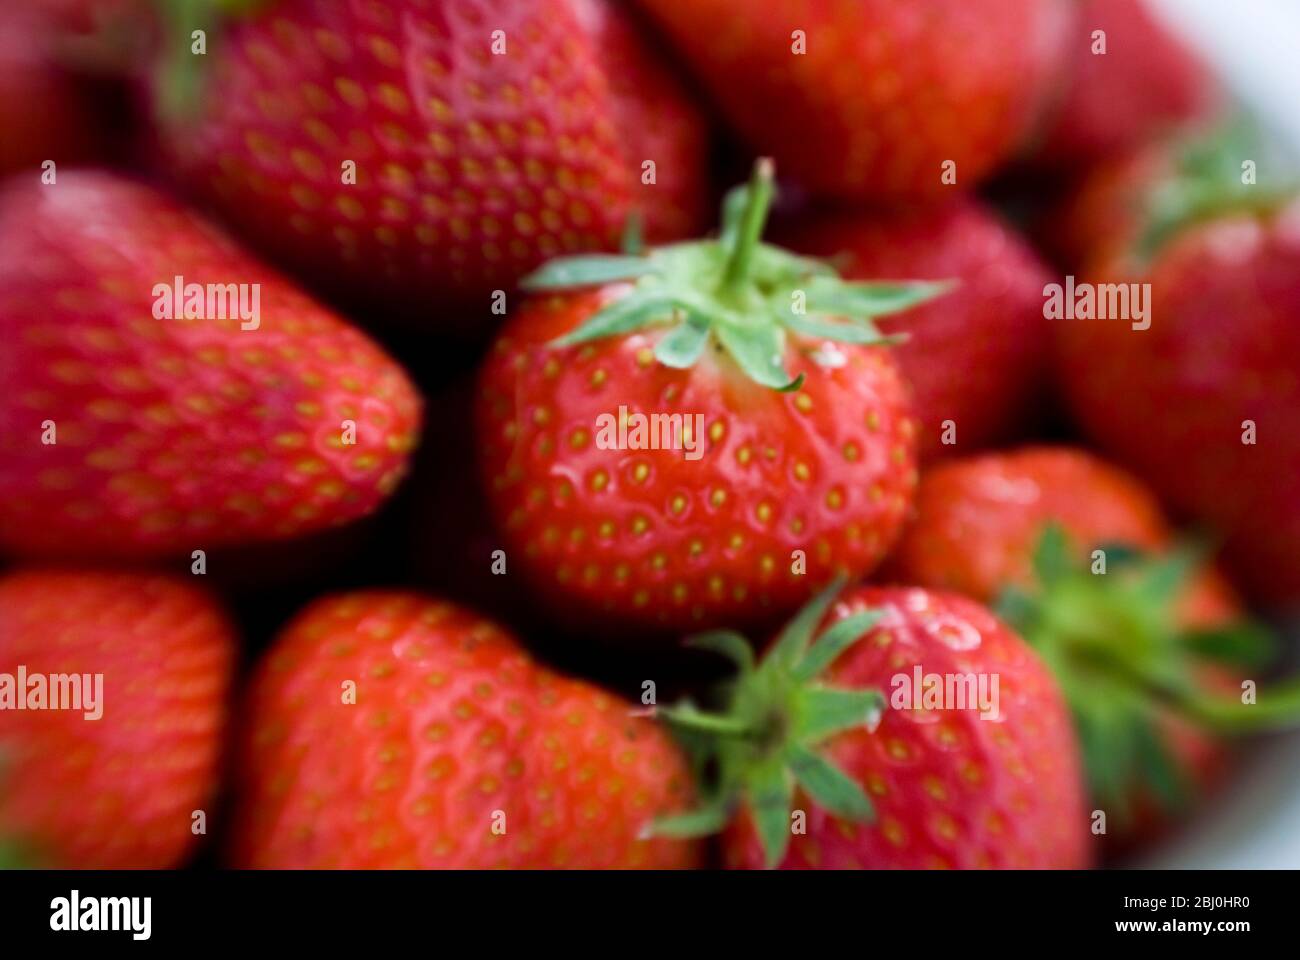 Recipiente lleno de fresas rojas maduras, grabado en la lente Lensbaby para un efecto de borde borroso. - Foto de stock